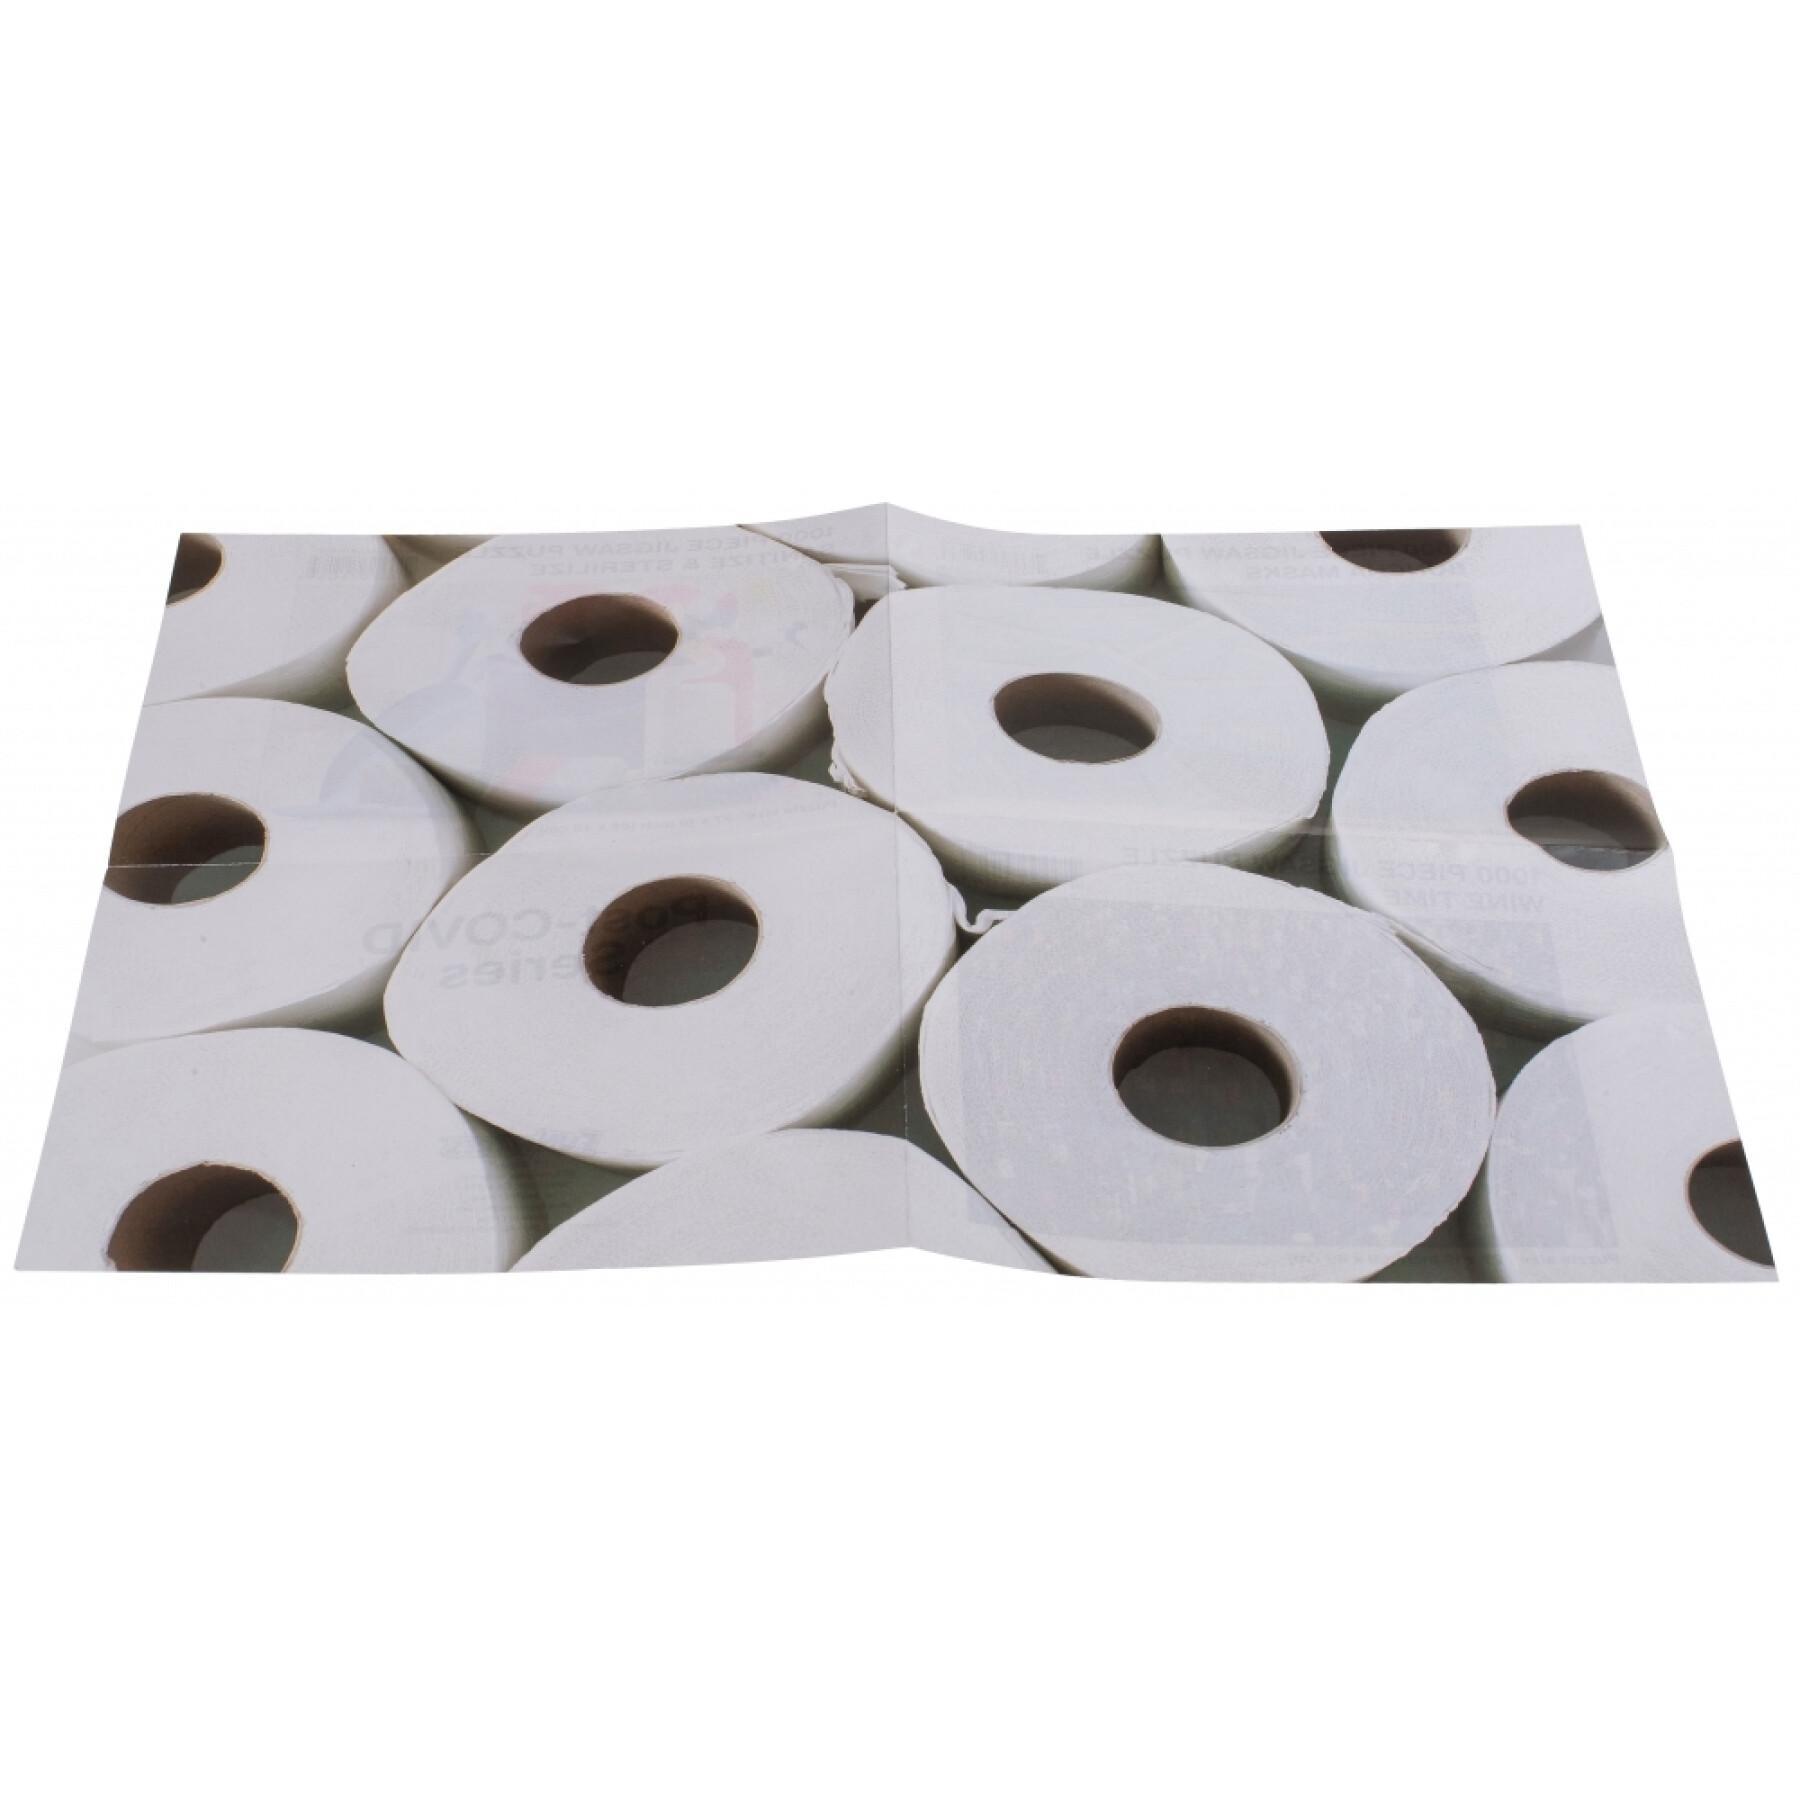 Puzzle de 1000 peças de puzzle com rolos de papel higiénico OOTB